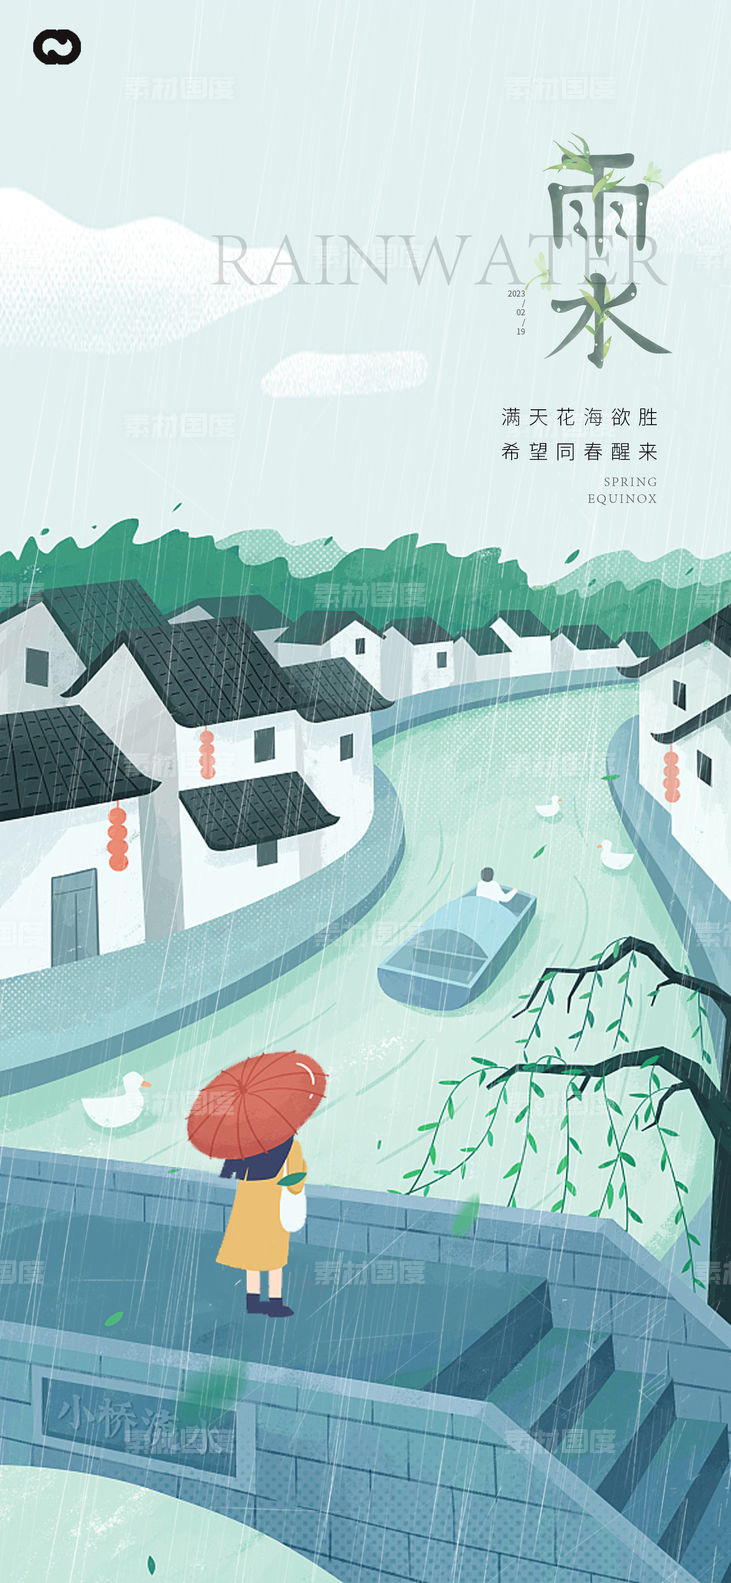 雨水节气海报